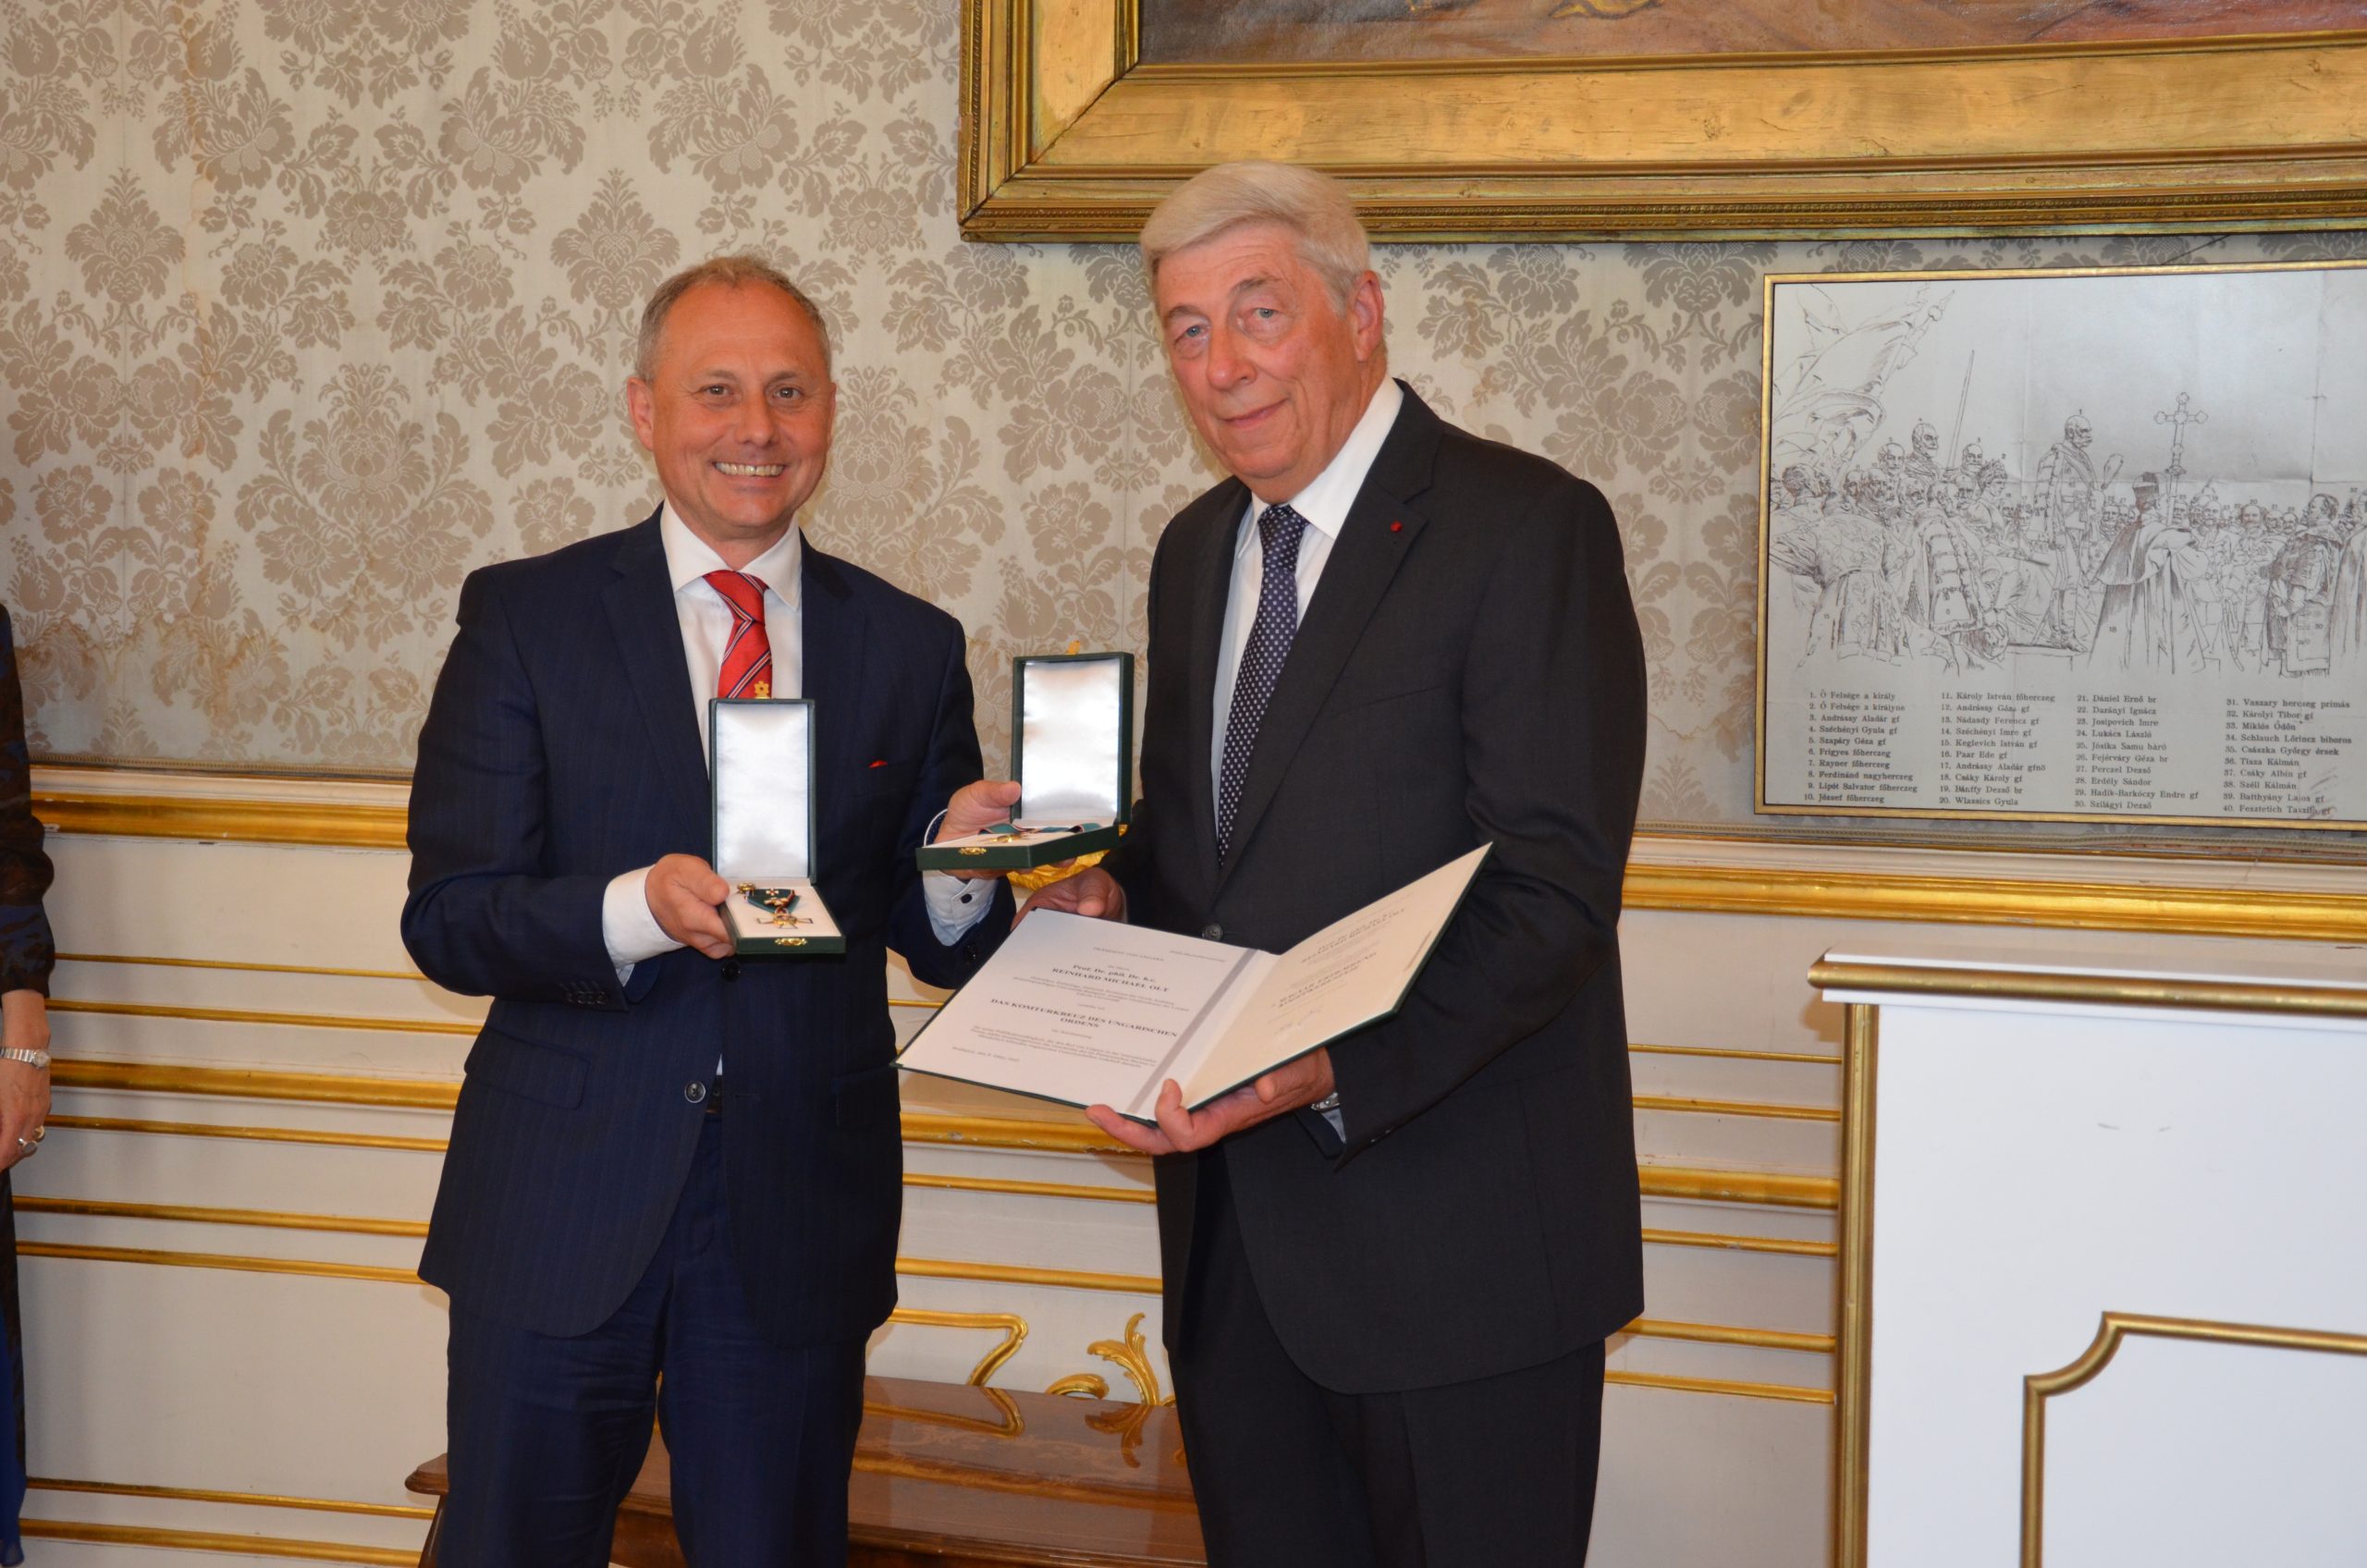 Ungarns Verdienstorden ging an deutschen Professor Reinhard Olt: “Für mich ist dies das größte, was ich bis jetzt bekommen habe”